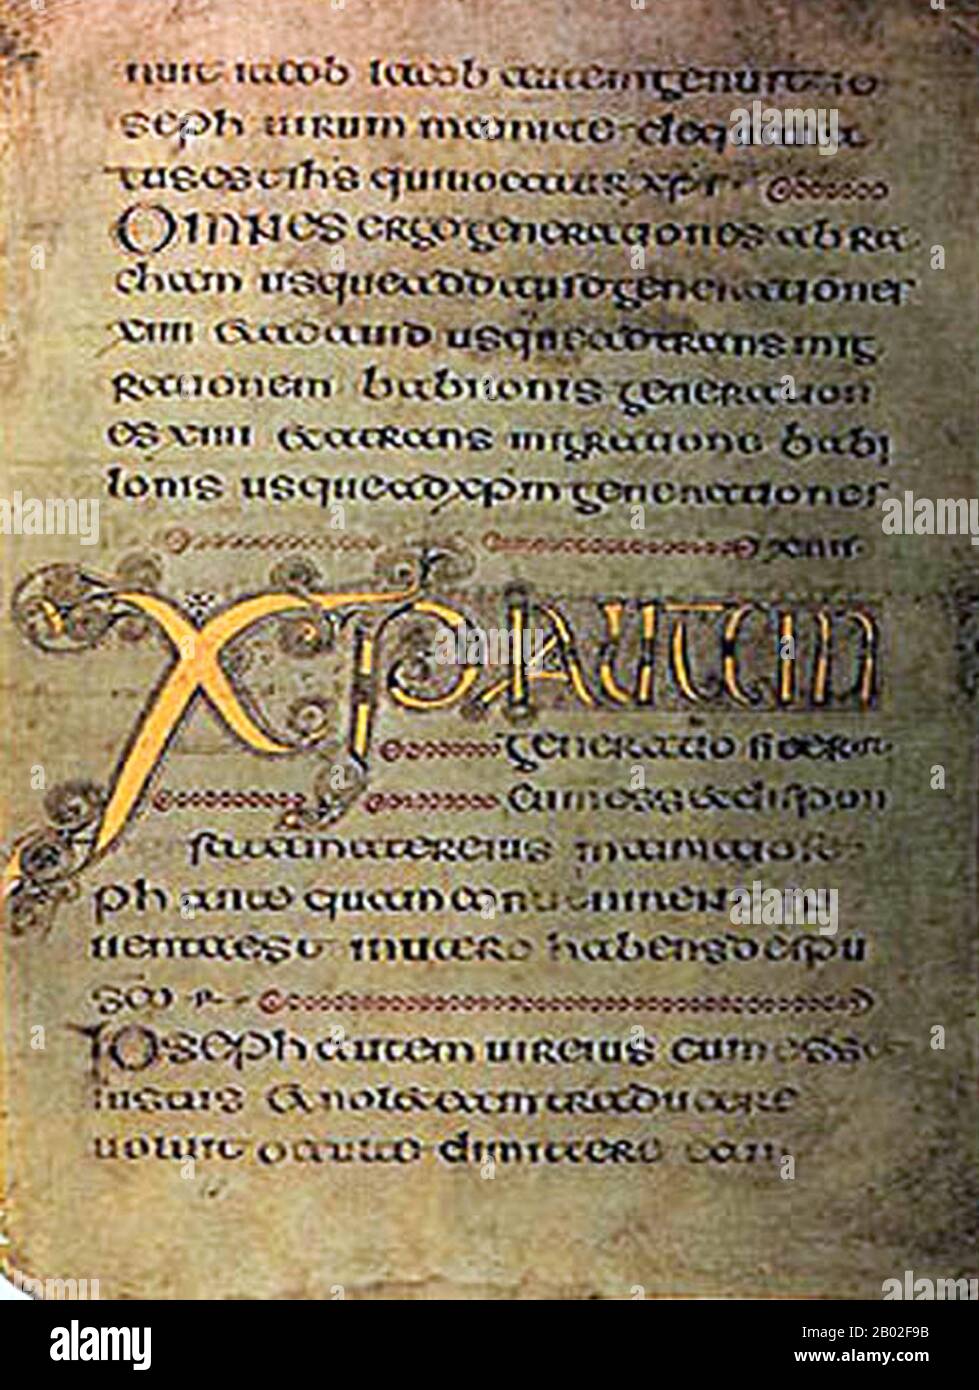 Il libro di Durrow è un libro del vangelo manoscritto illuminato medievale in stile di arte insulare. Probabilmente è stato creato tra 650 e 700 CE. Il luogo della creazione potrebbe essere stata Durrow Abbey in Irlanda o un monastero in Northumbria nel nord-est dell'Inghilterra (dove il monastero di Lindisfarne sarebbe il probabile candidato) o forse Iona Abbey nella Scozia occidentale -- il luogo di origine è stato discusso dagli storici per decenni senza che emergesse un consenso. Il libro di Durrow era certamente all'Abbazia di Durrow da 916. Oggi è nella biblioteca del Trinity College di Dublino (MS A.4. 5. (57)). Foto Stock